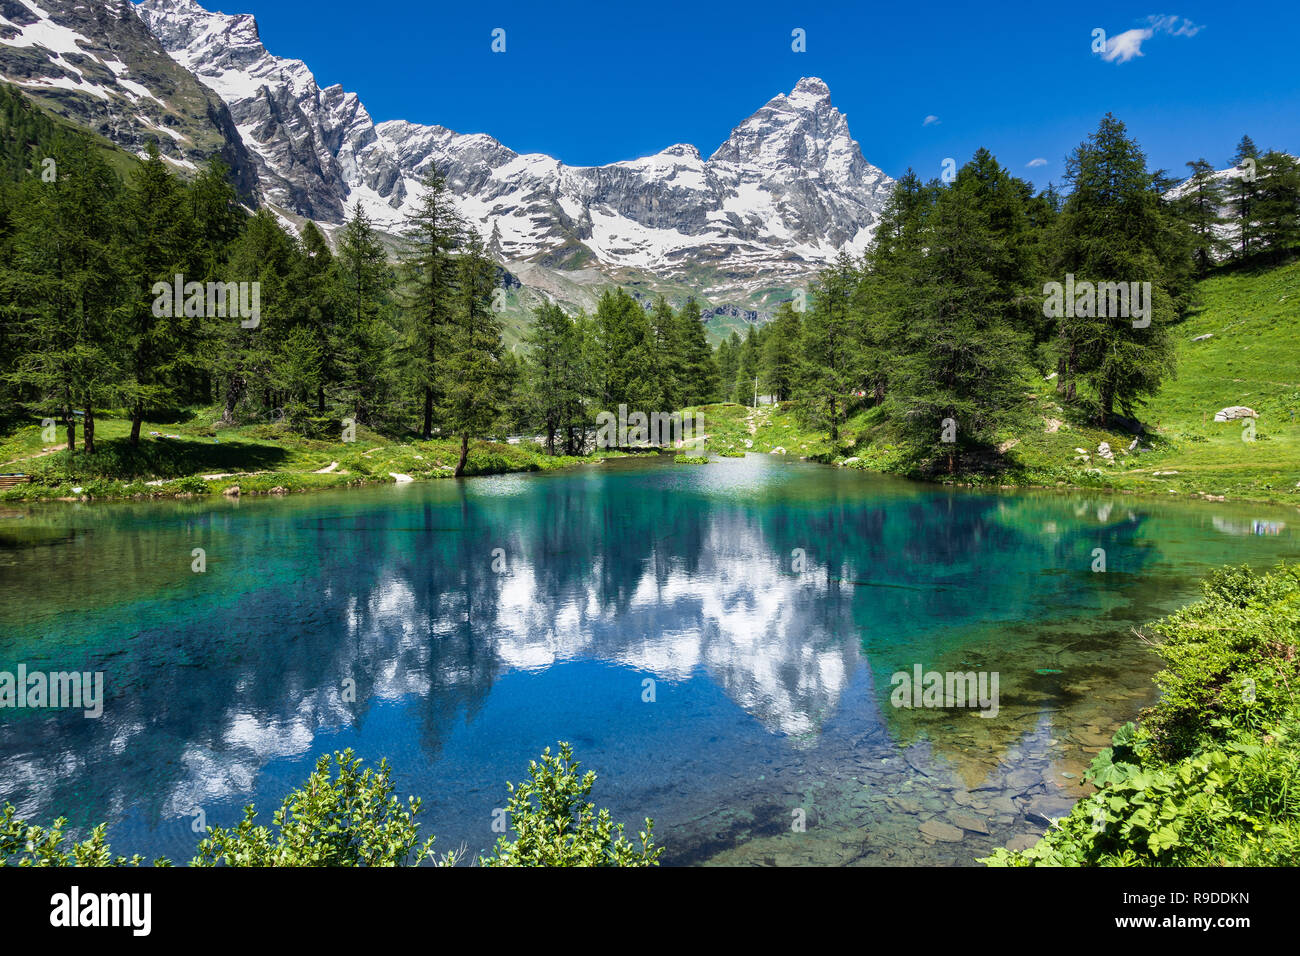 Estate paesaggio alpino con il Cervino (Cervino) riflesso sul lago blu (Lago Blu) vicino a Breuil-Cervinia, Valle d'Aosta, Italia settentrionale Foto Stock